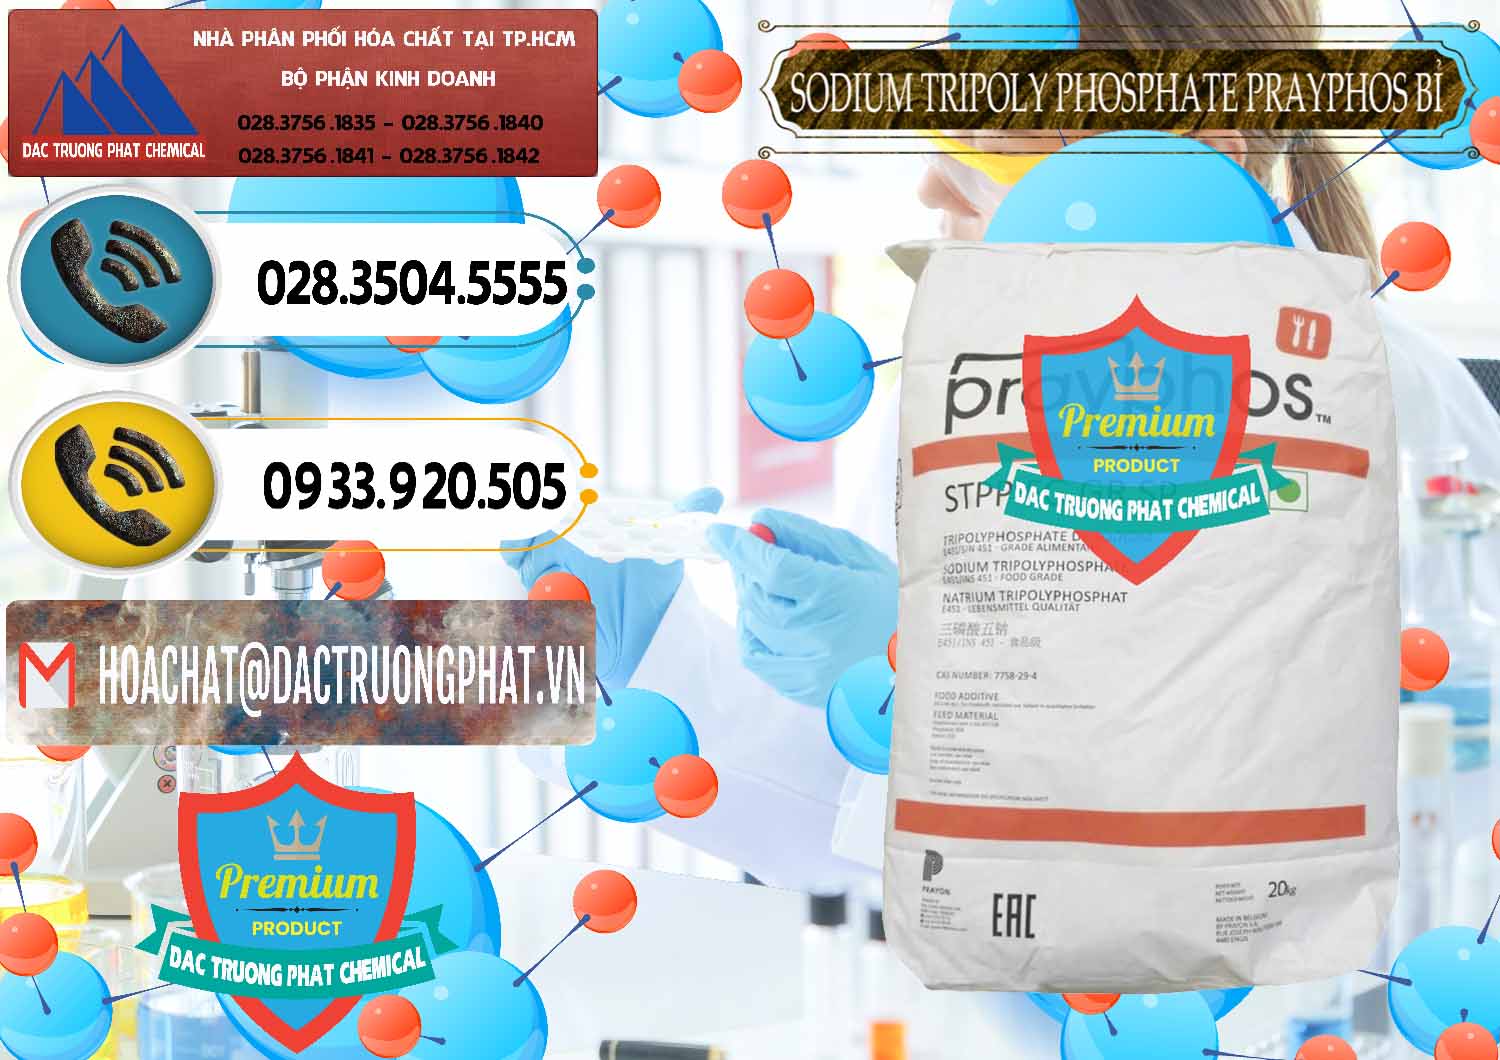 Bán & phân phối Sodium Tripoly Phosphate - STPP Prayphos Bỉ Belgium - 0444 - Cty chuyên cung cấp ( nhập khẩu ) hóa chất tại TP.HCM - hoachatdetnhuom.vn